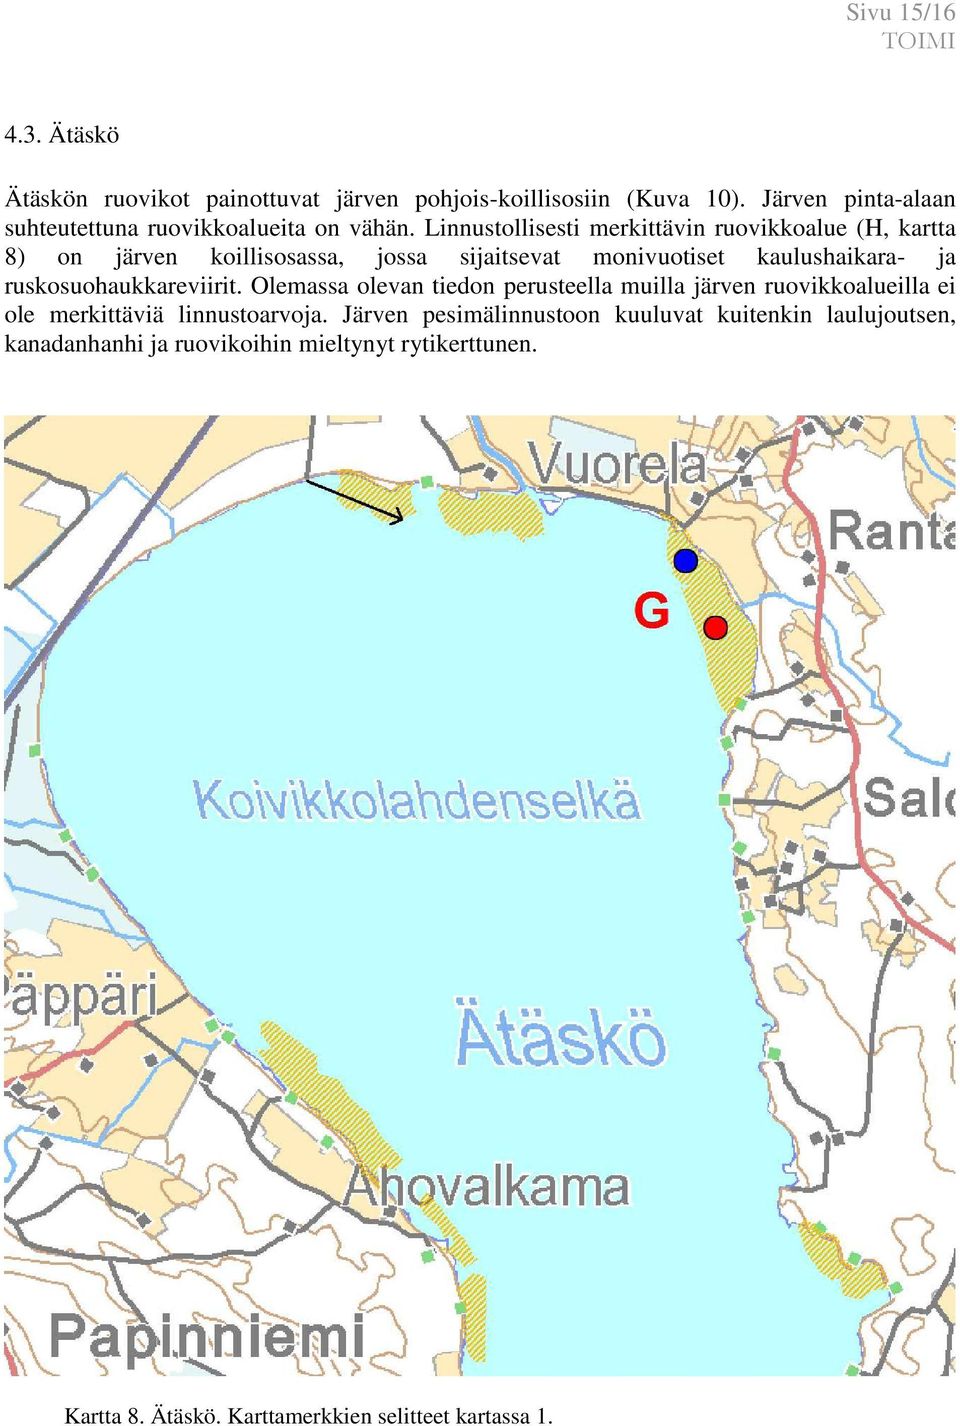 Linnustollisesti merkittävin ruovikkoalue (H, kartta 8) on järven koillisosassa, jossa sijaitsevat monivuotiset kaulushaikara- ja